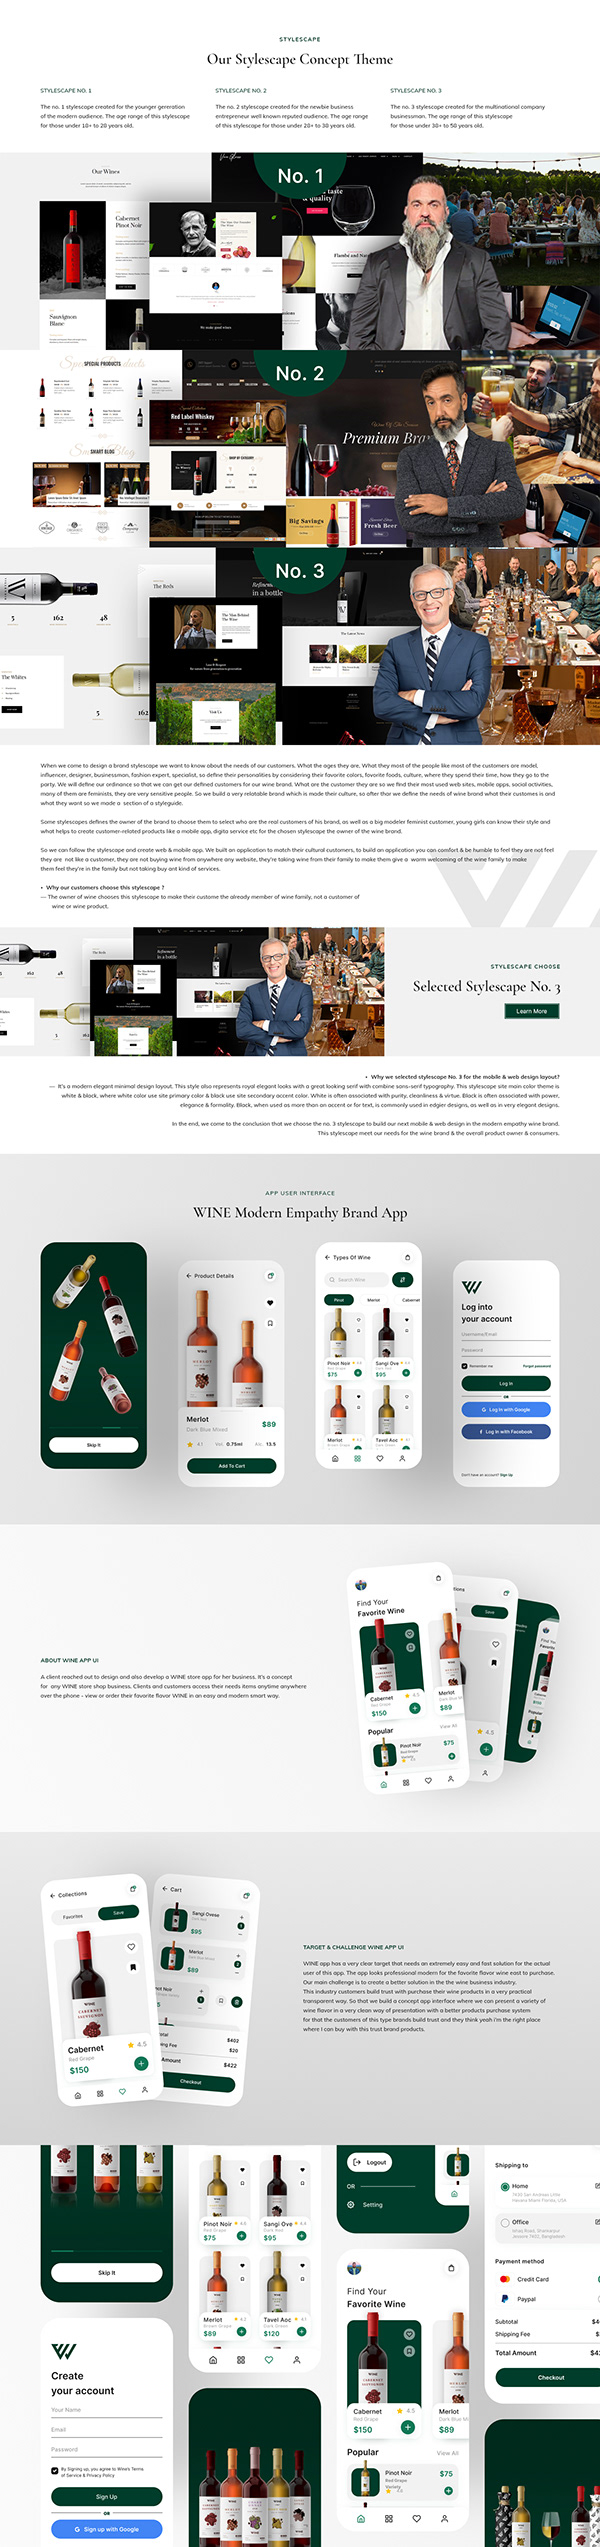 Wine - Branding, Website, Apps, Case Study